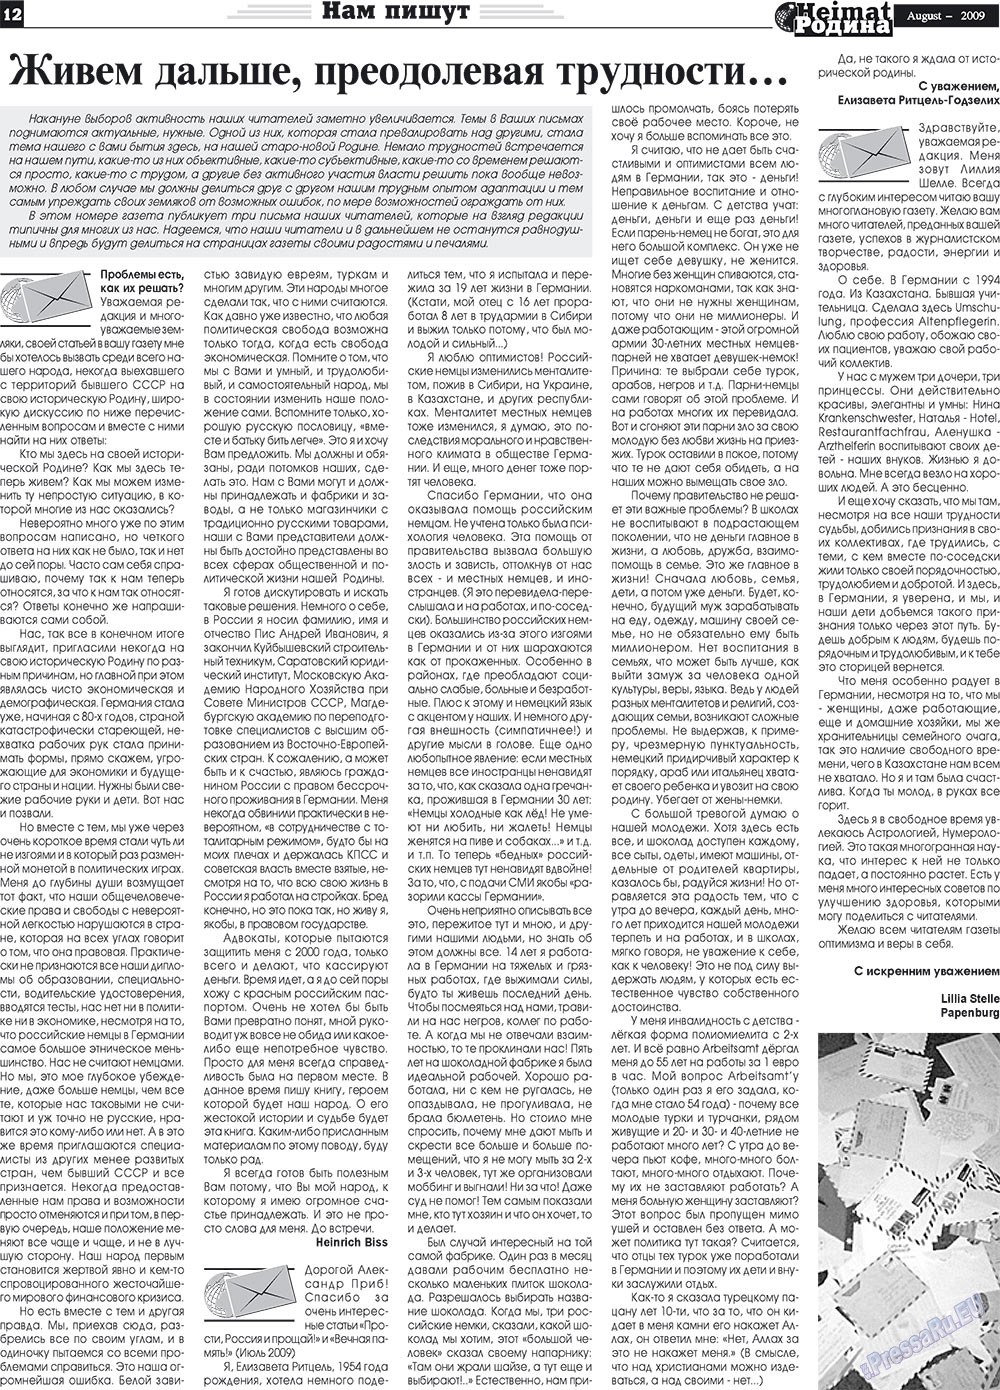 Heimat-Родина (газета). 2009 год, номер 8, стр. 12